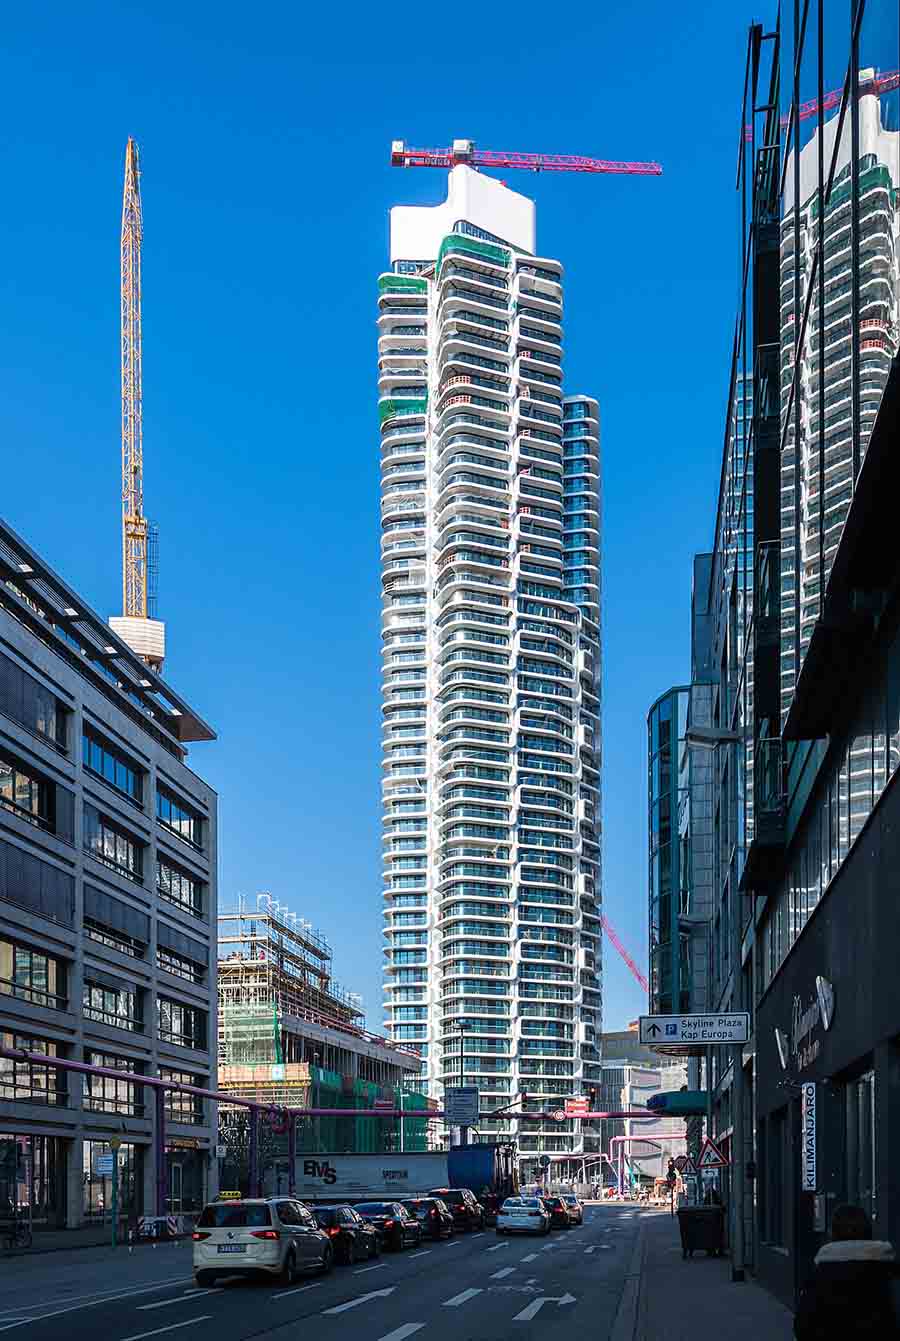 Tháp Grand ở Frankfurt có chiều cao 180m, hiện là toàn nhà dân cư cao nhất nước Đức. Nó có tổng cộng 51 tầng, có sân thượng ngắm hoàng hôn tuyệt đẹp ở tầng 7. Đây được xem là tòa nhà cao tầng dành cho dân cư đầu tiên ở Đức được bán trên toàn cầu.